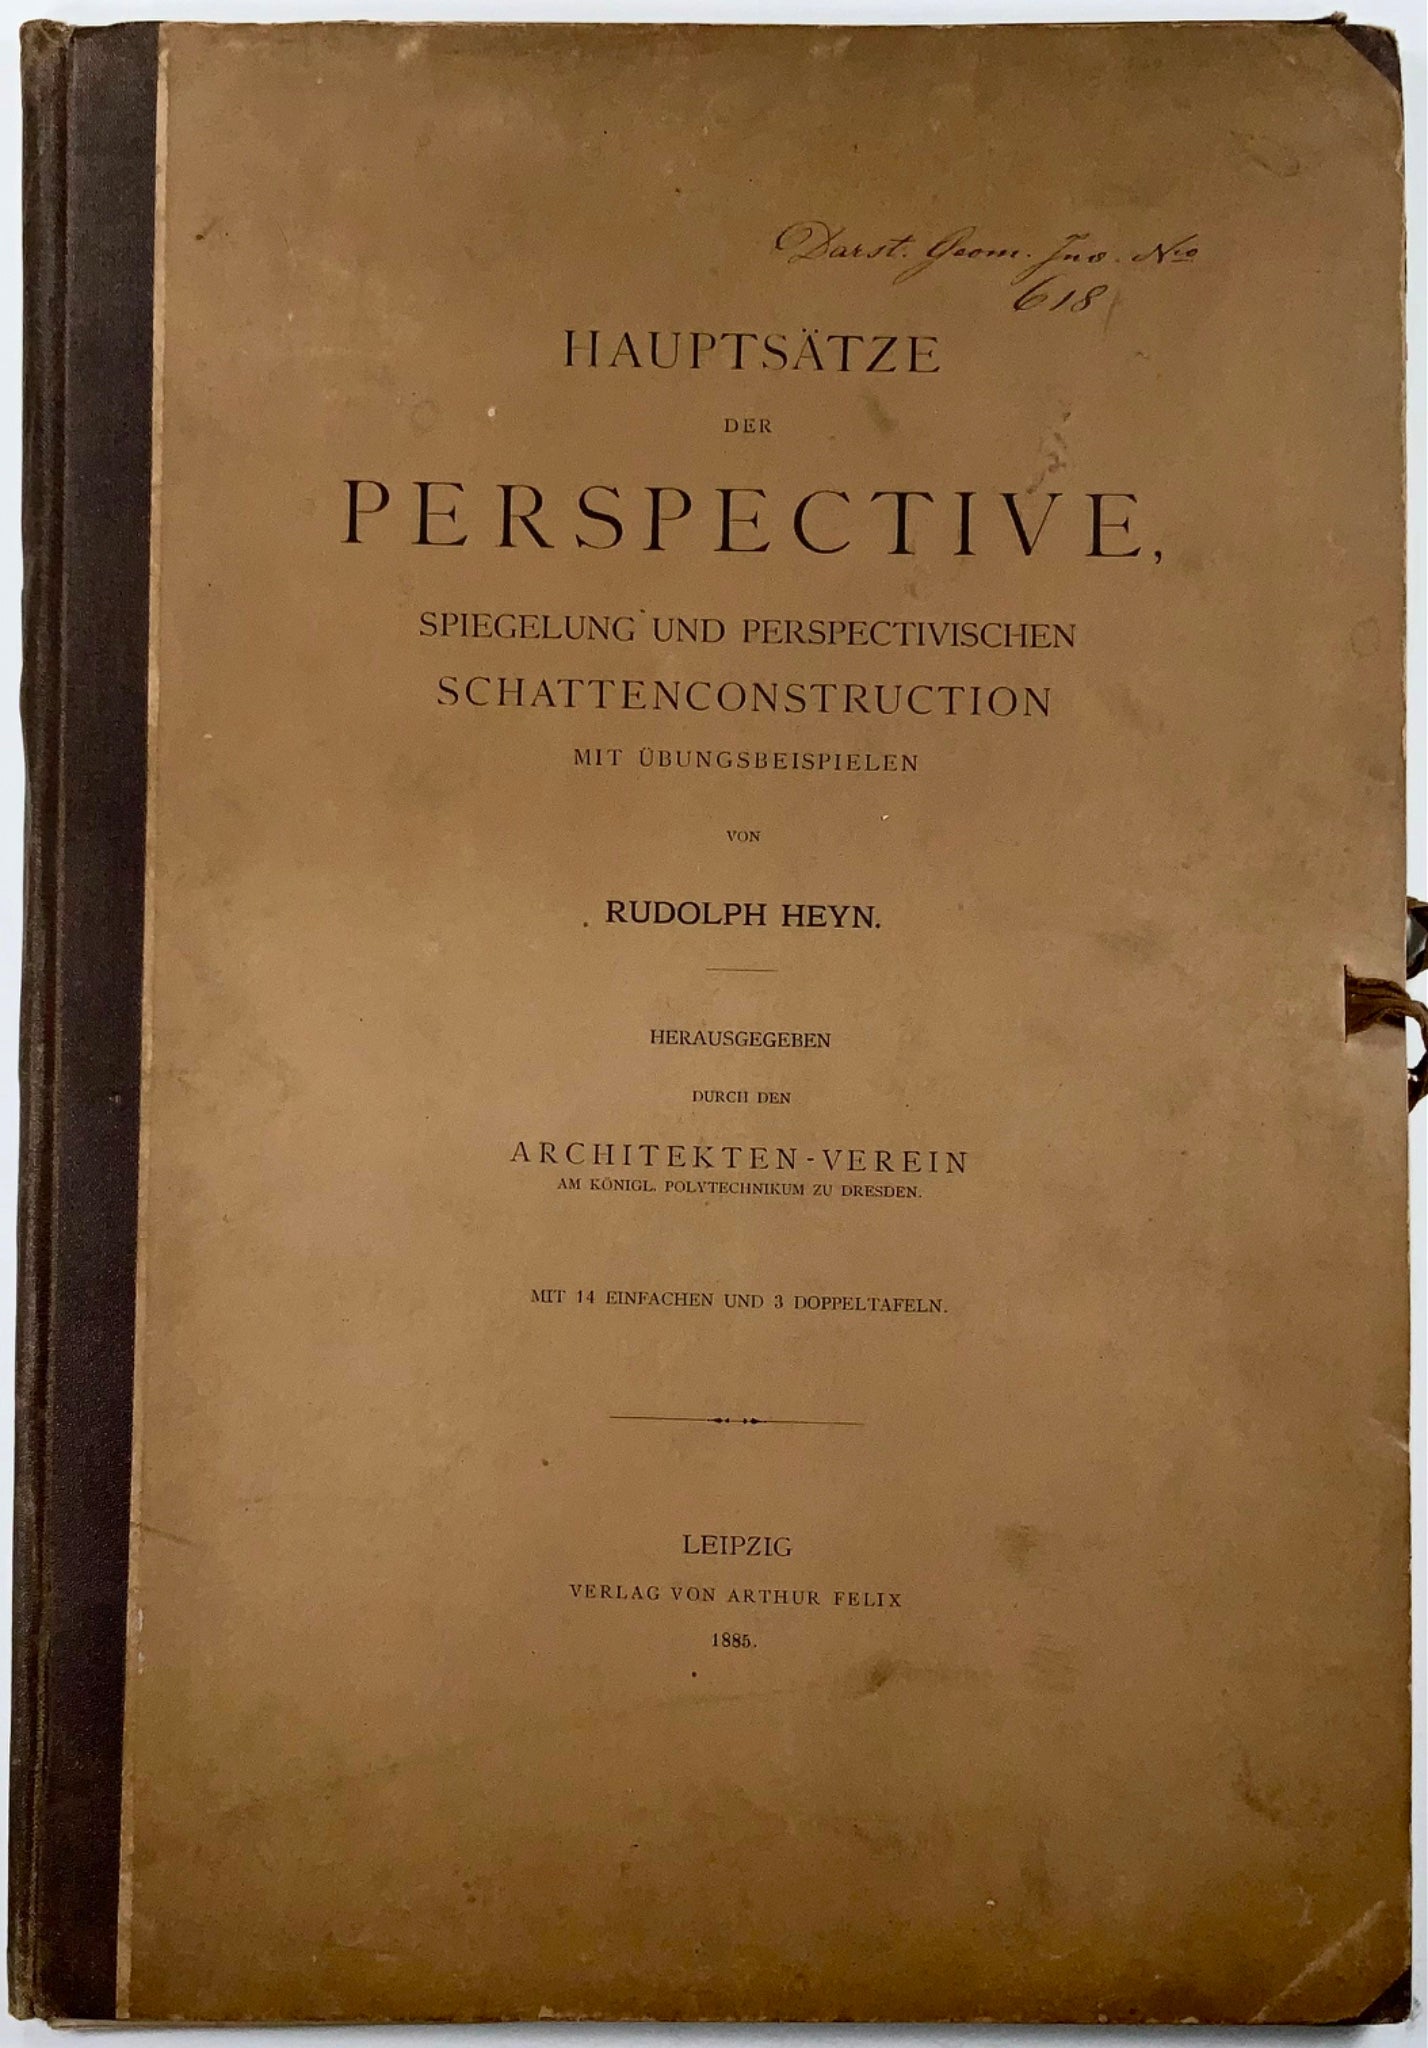 1885 I principi della prospettiva, foglio, Heyn, 17 tavole, art